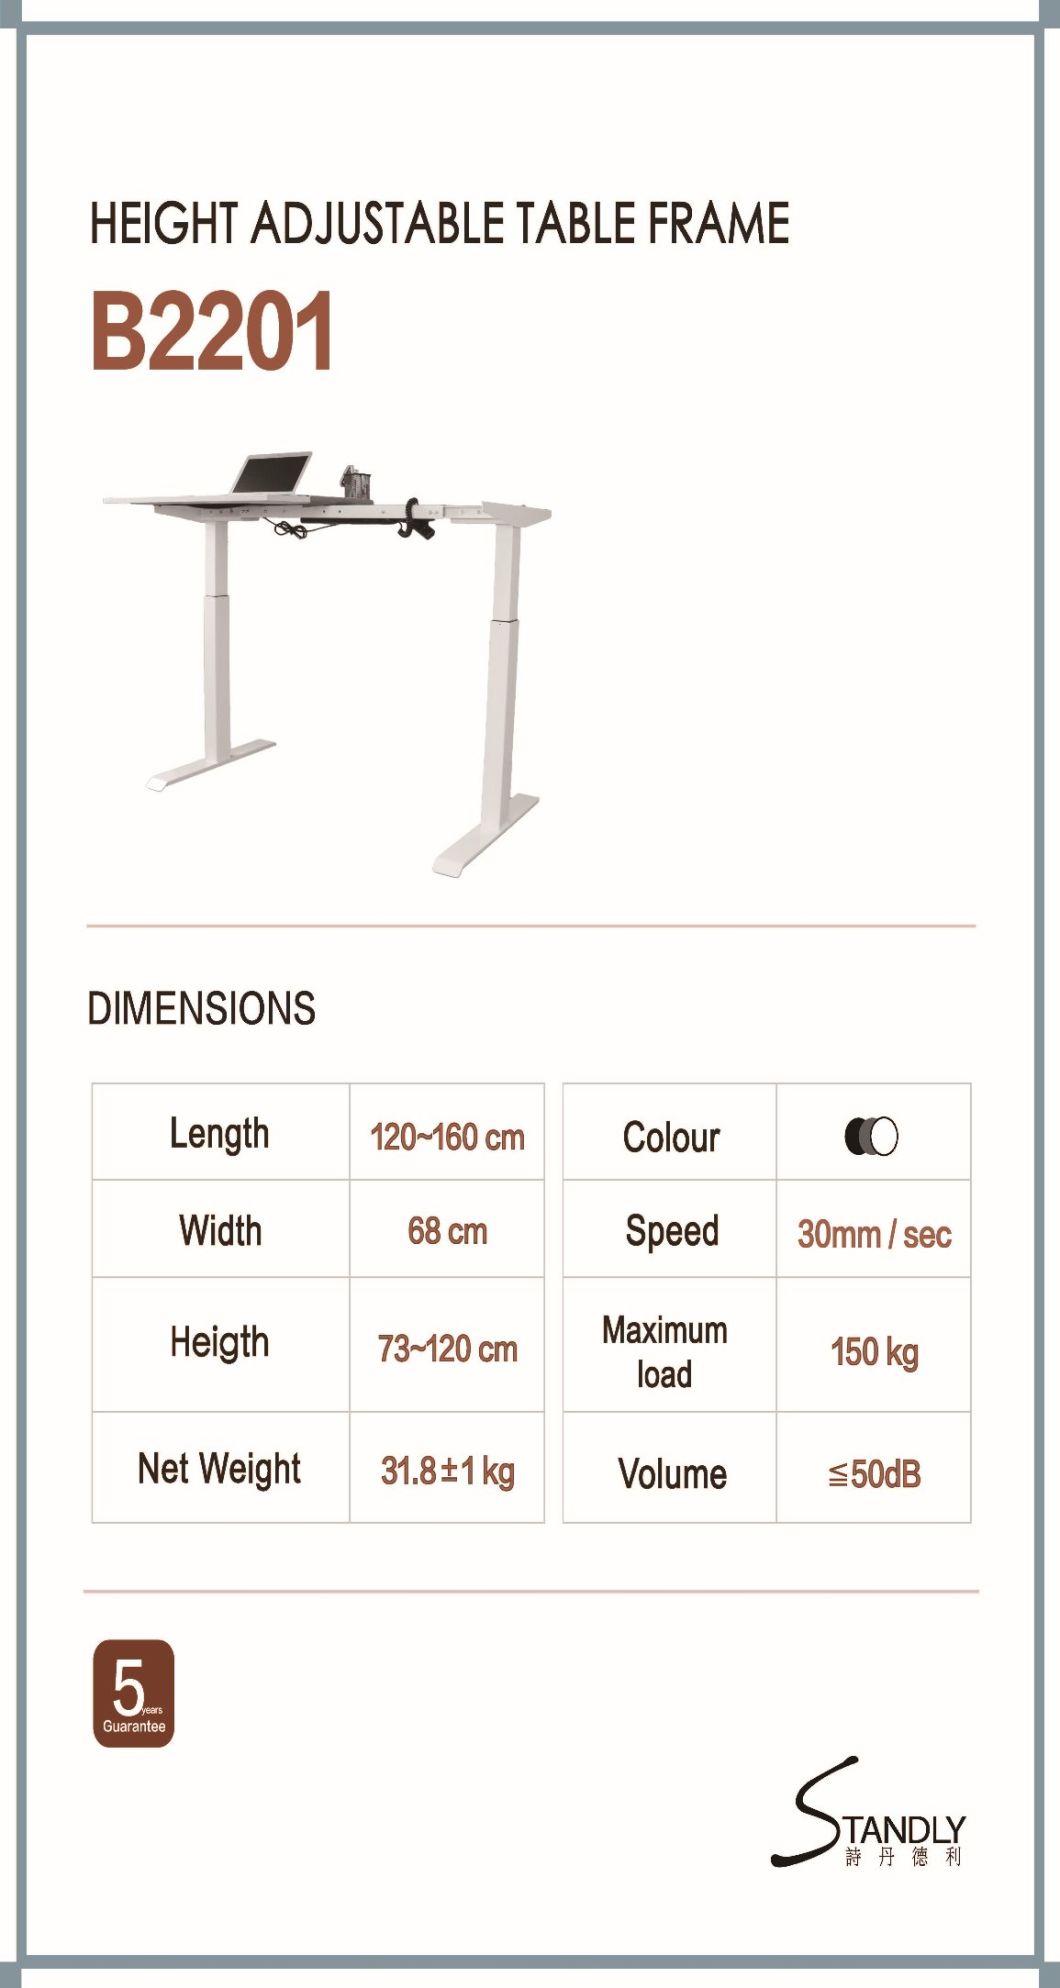 Single Motor Electric Lift Table Standing Computer Desk Home Desk Office Desk Mobile Desk Bedroom Learning Desk